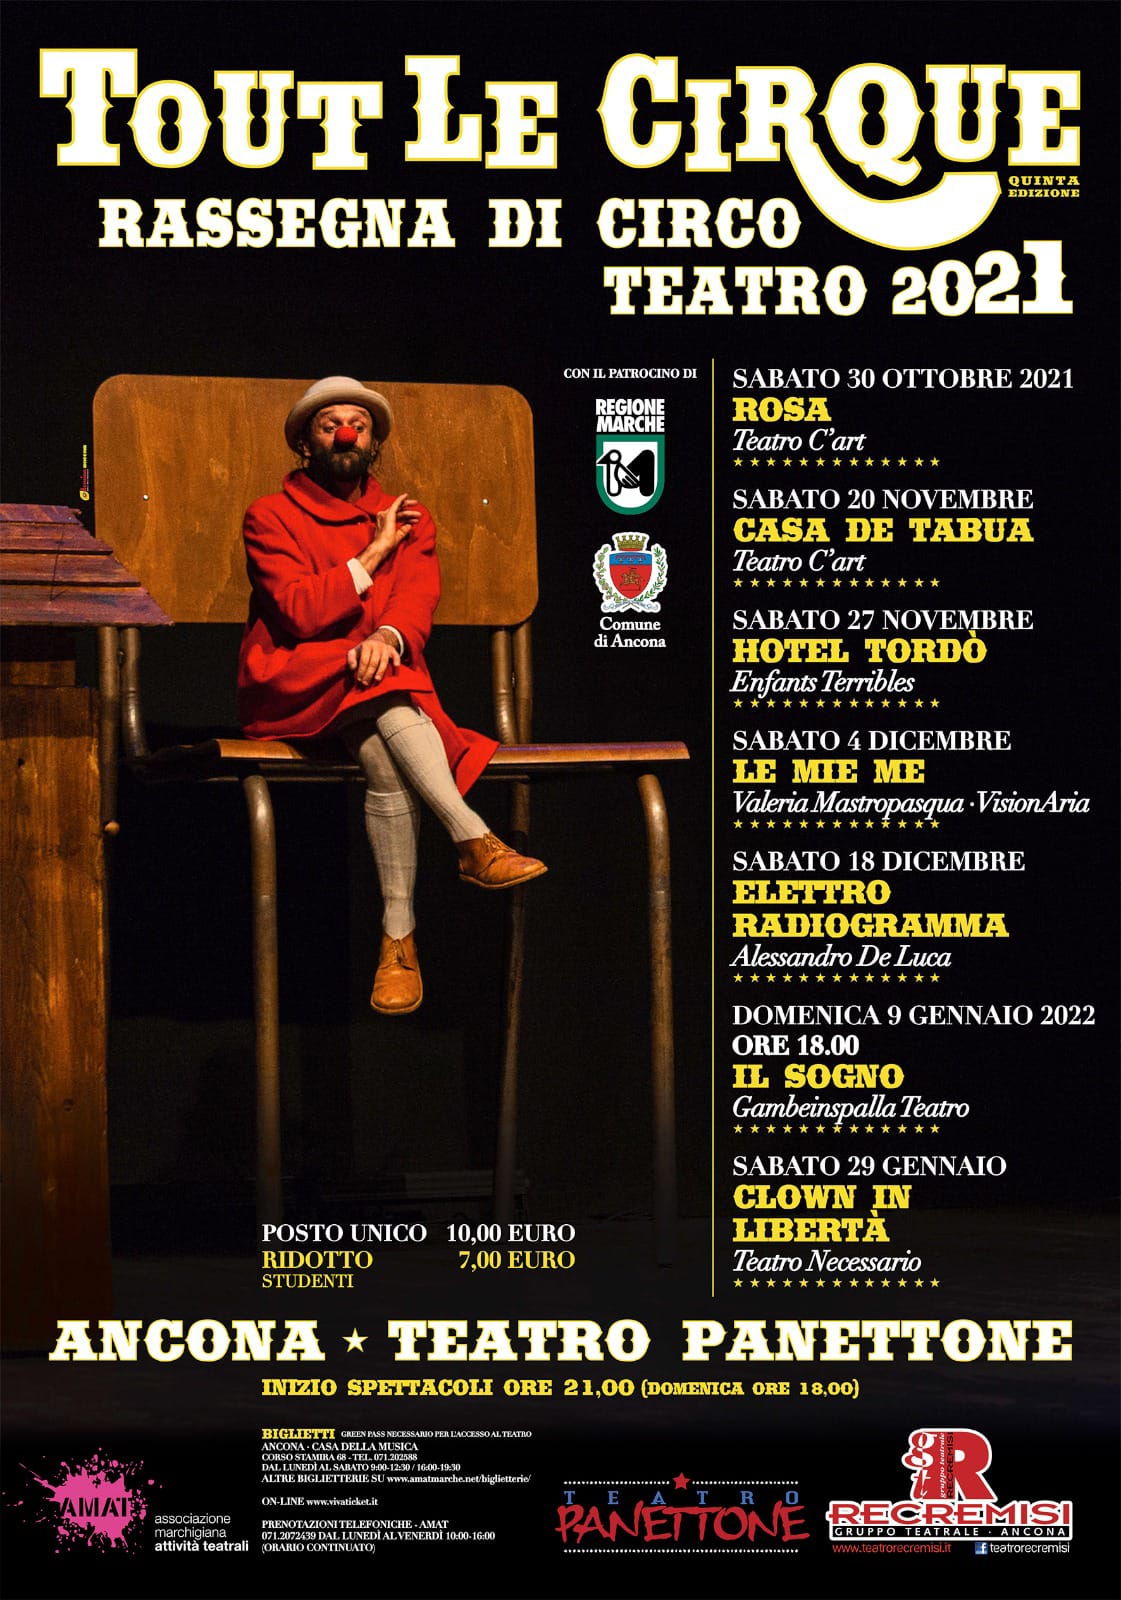 Tout Le CirQue 2021 – Rassegna di Circo Teatro